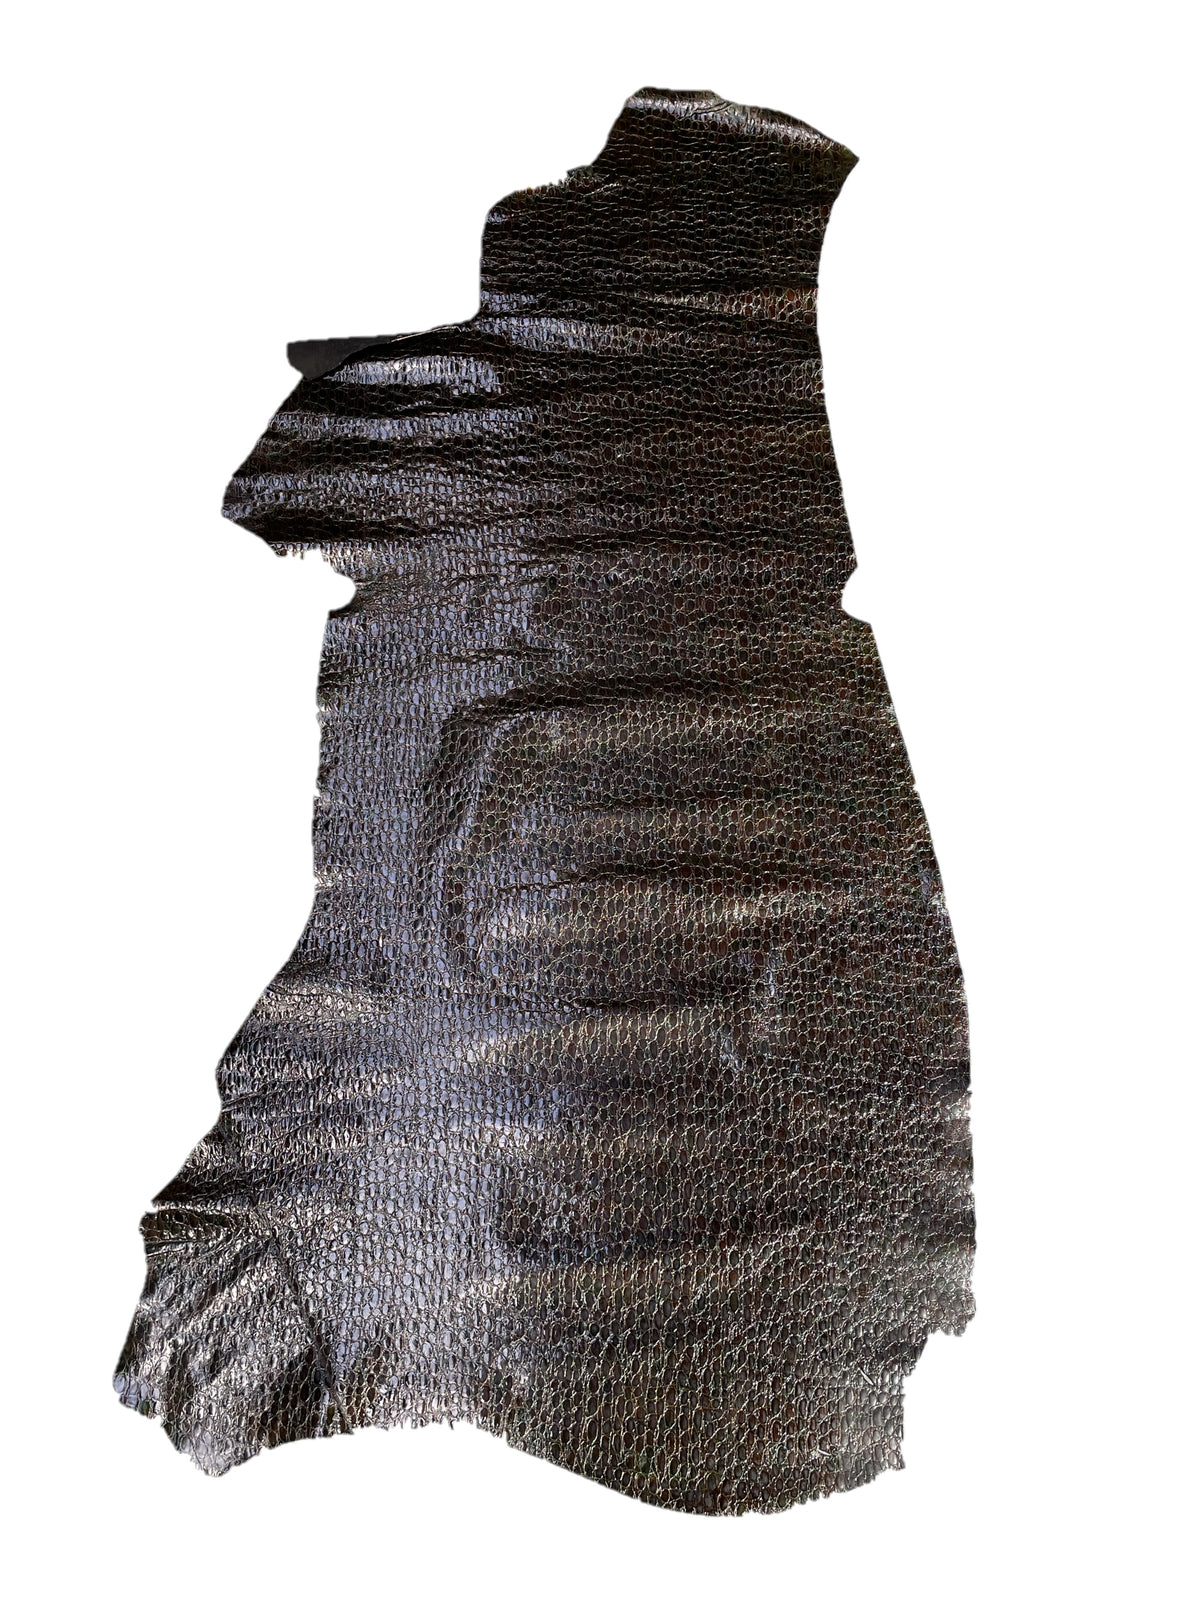 Crocodile Print Cow Side | Dark Brown | 0.8mm | 13 sq.ft | $115 ea.